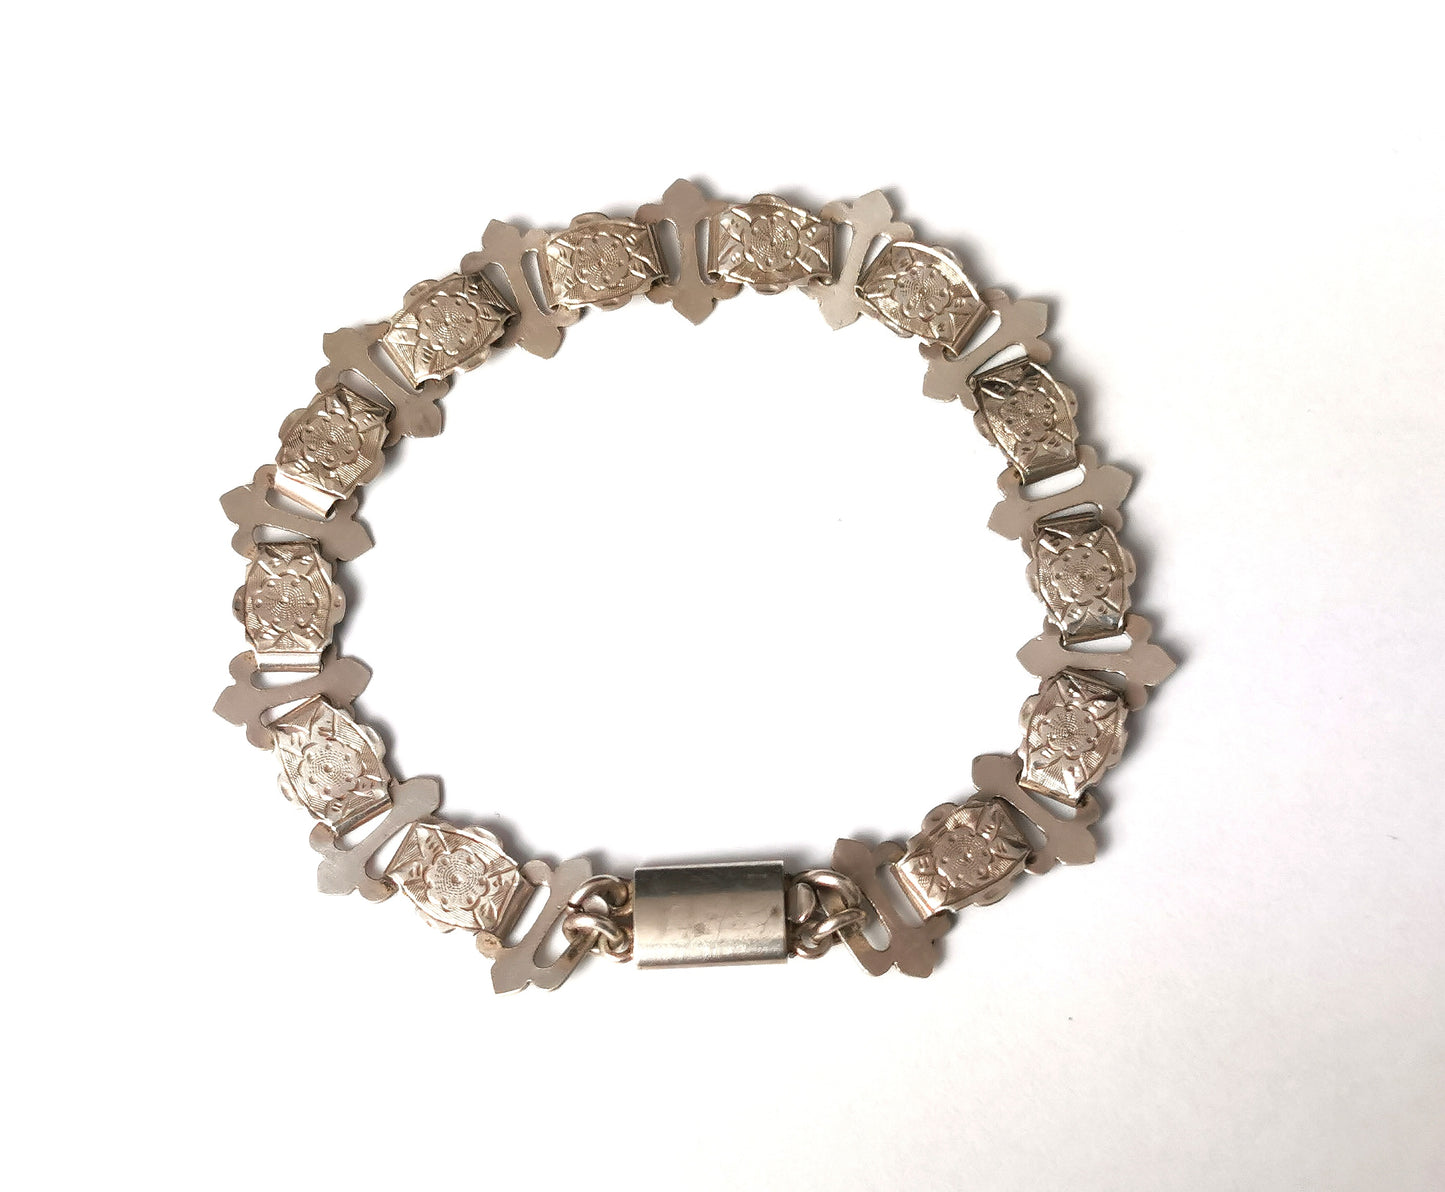 Antique Victorian silver book chain bracelet, floral